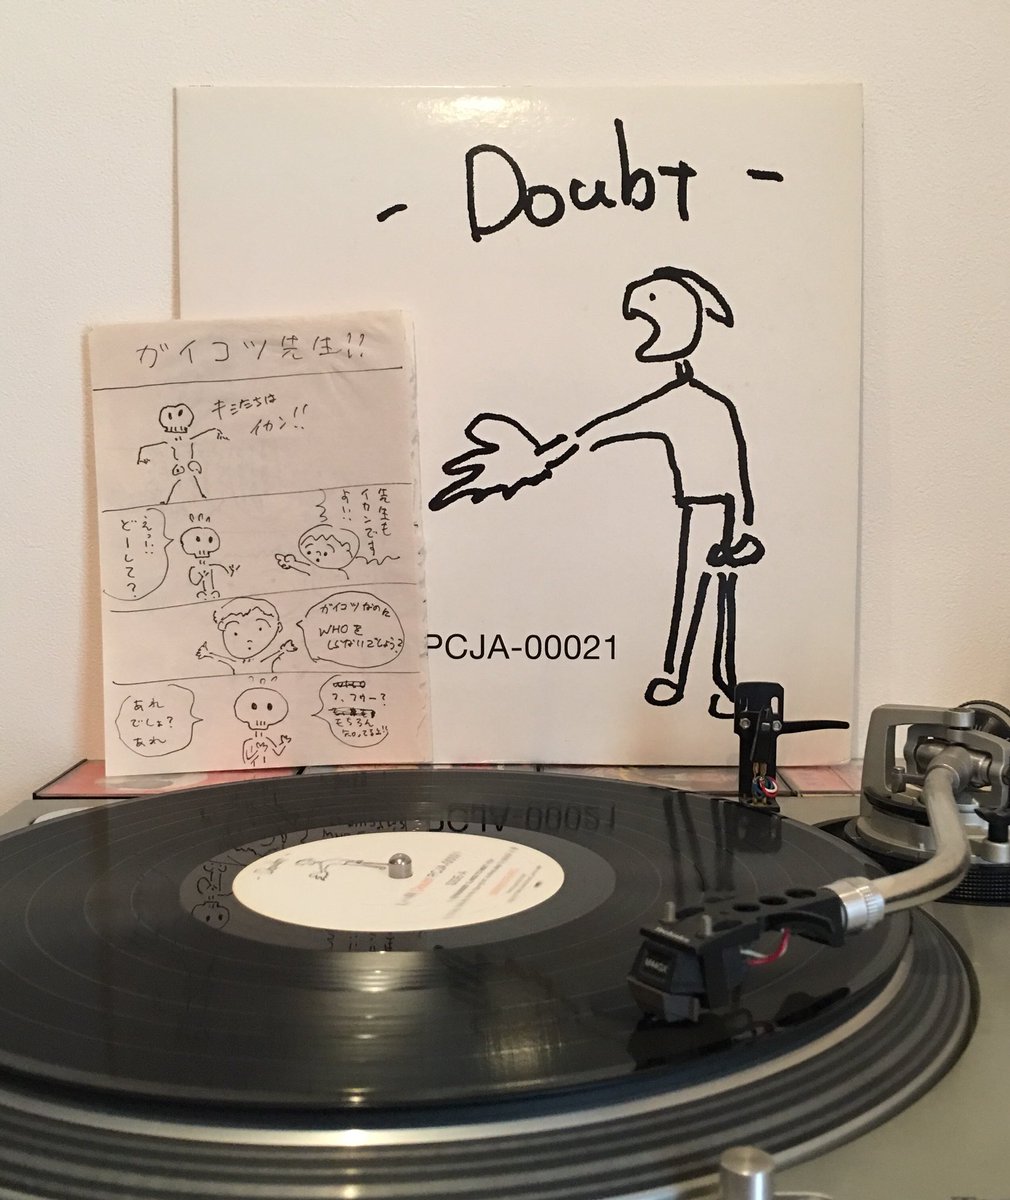 L⇔R『Doubt』LPのジャケから黒沢健一さんと描いたマンガが出てきました!うちでレコード聴きながらなんとなく描いたやつ。
タイトル(僕)→1コマ目(黒沢さん)→2コマ目(僕)→3コマ目(黒沢さん)〜と交互に描いています。完璧なるロックマンガ! 